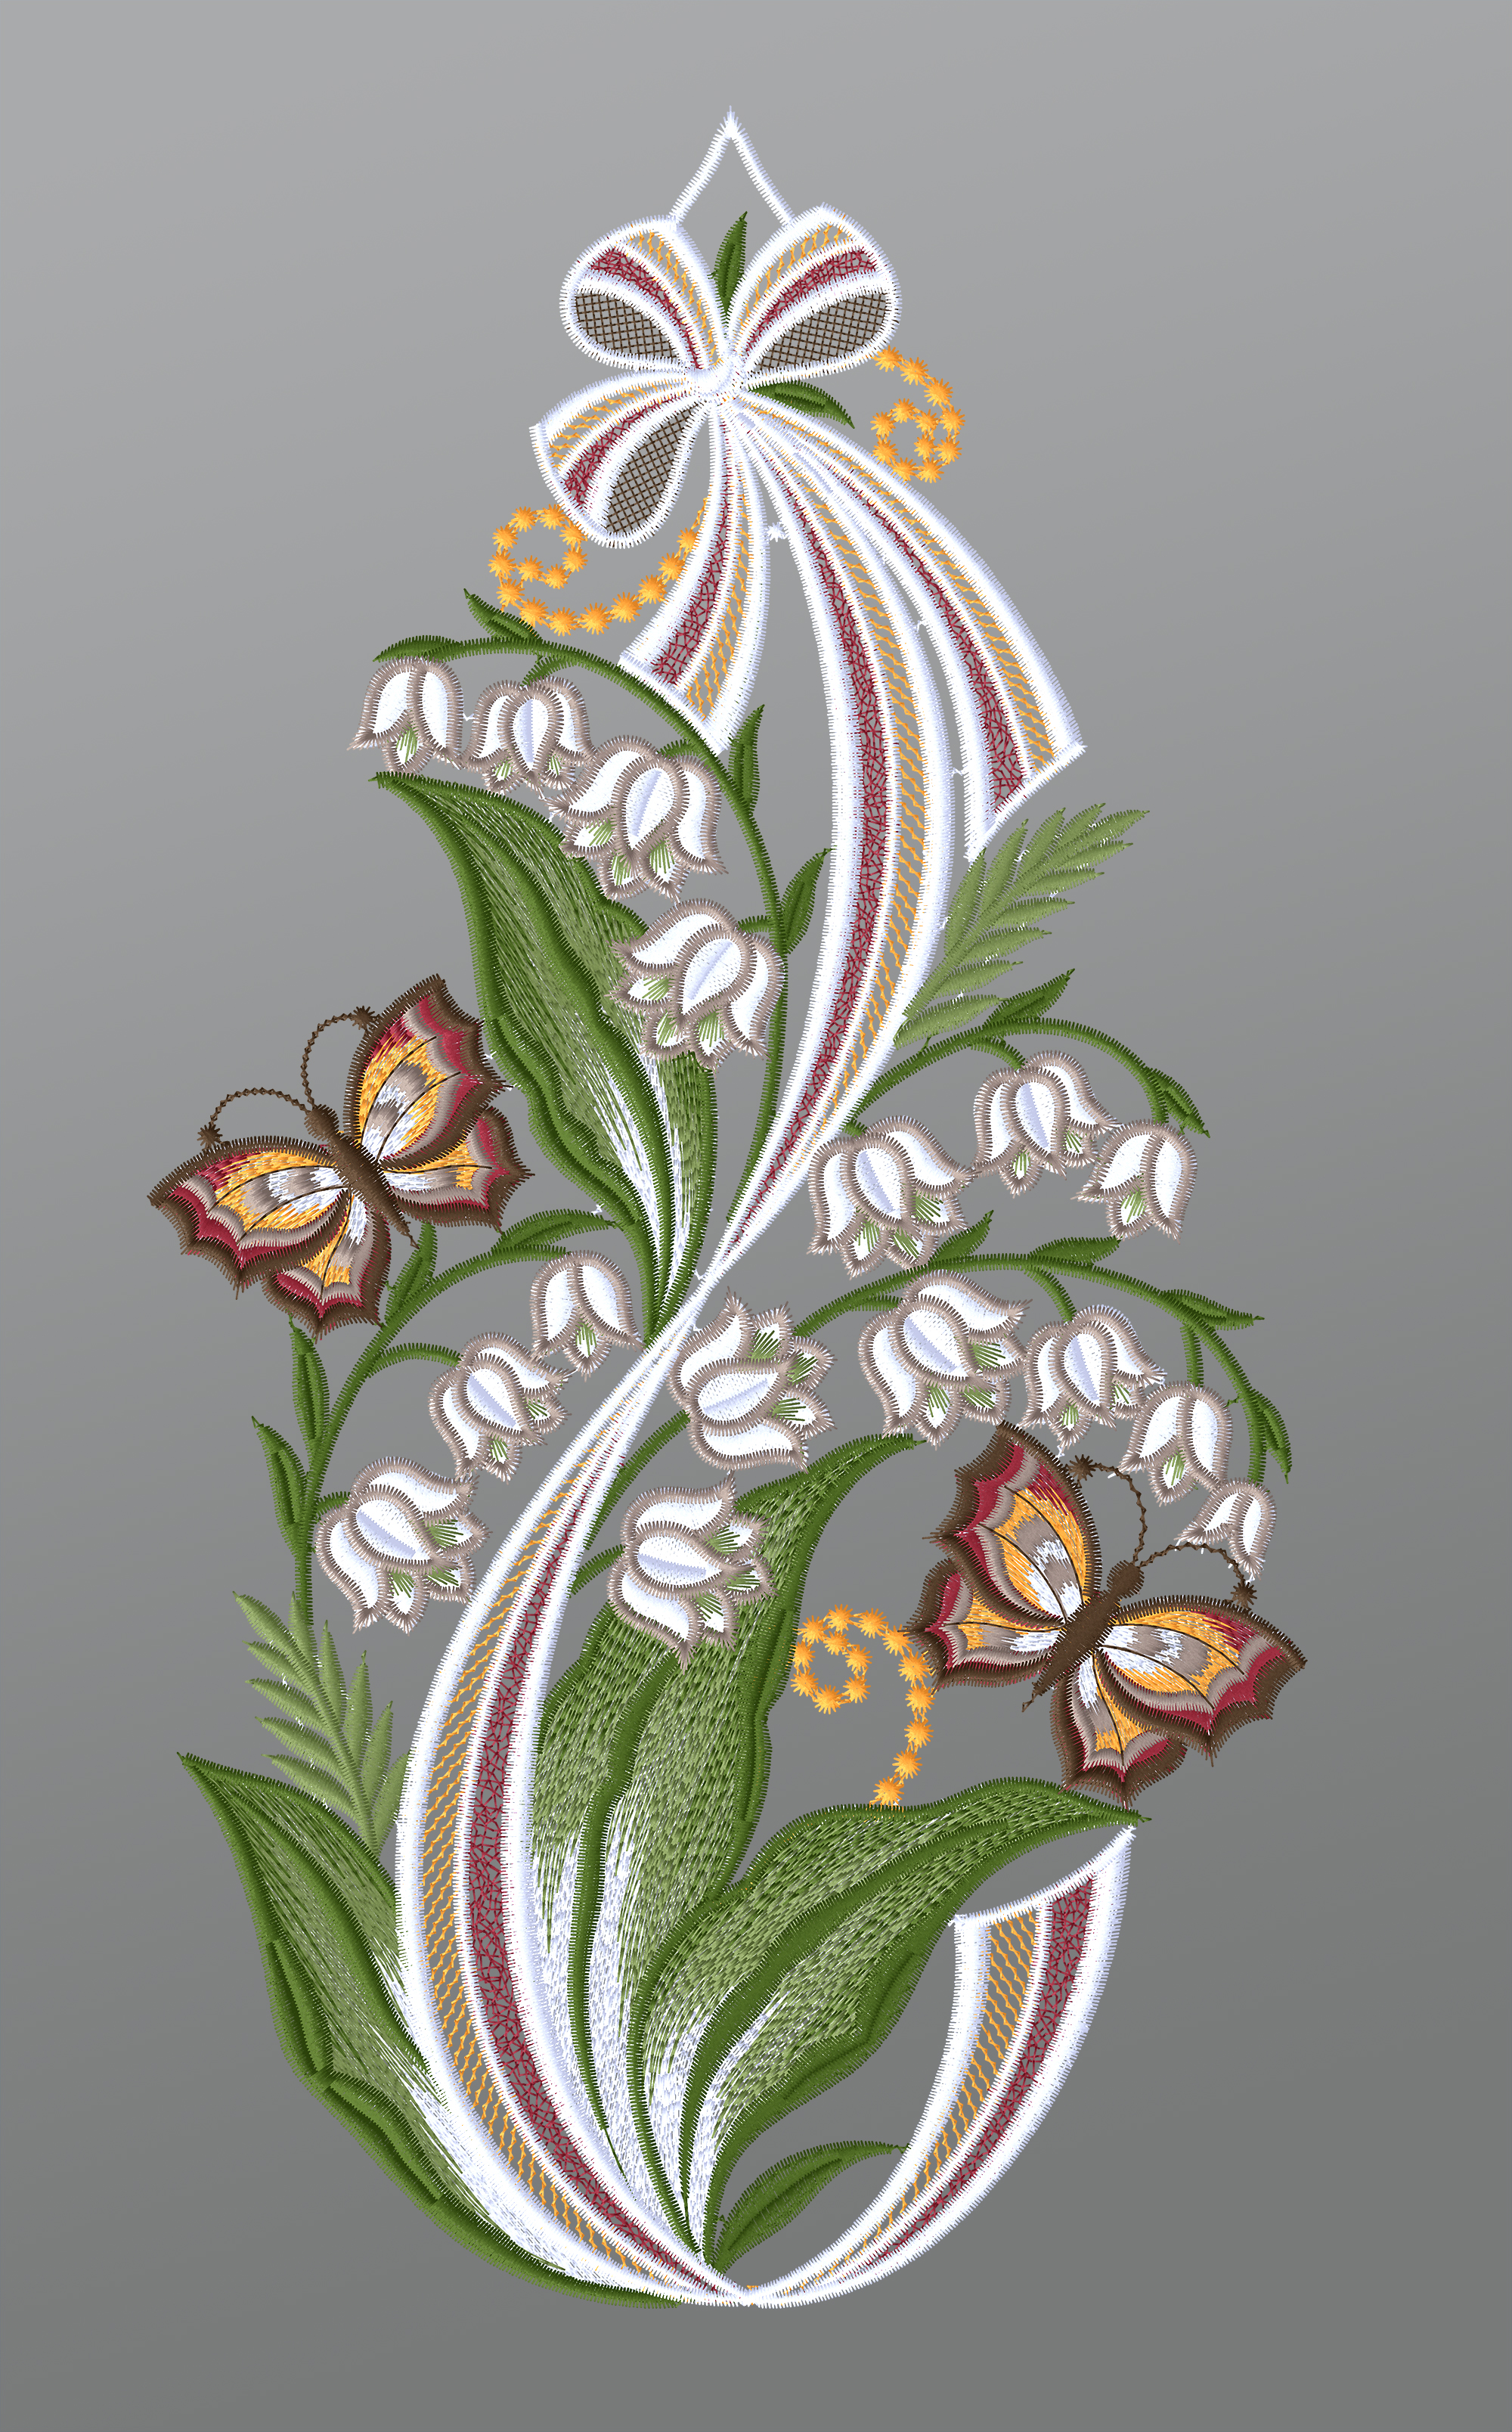 ArtikelbildFensterbild aus Plauener Spitze - Maiglöckchen mit Schmetterlingen #1W mehrfarbig